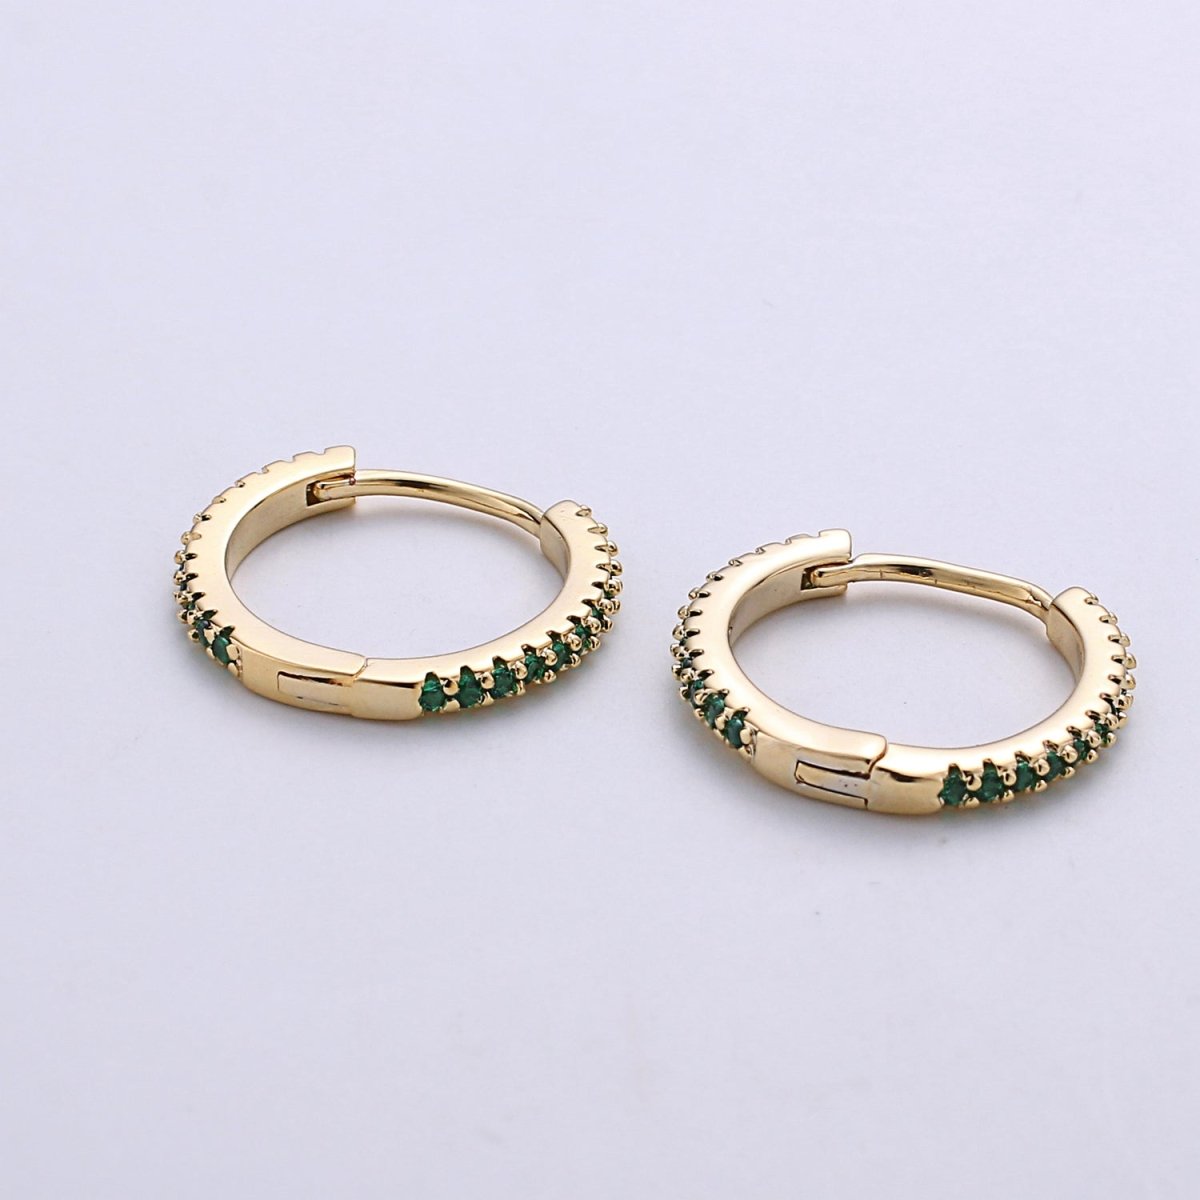 Gold hoop earrings - huggie hoops earrings - Dainty hoops Earring - Tiny hoops - Thin hoops - Minimalist Jewelry Micro Pave Earring Q-208 - Q-211 - DLUXCA